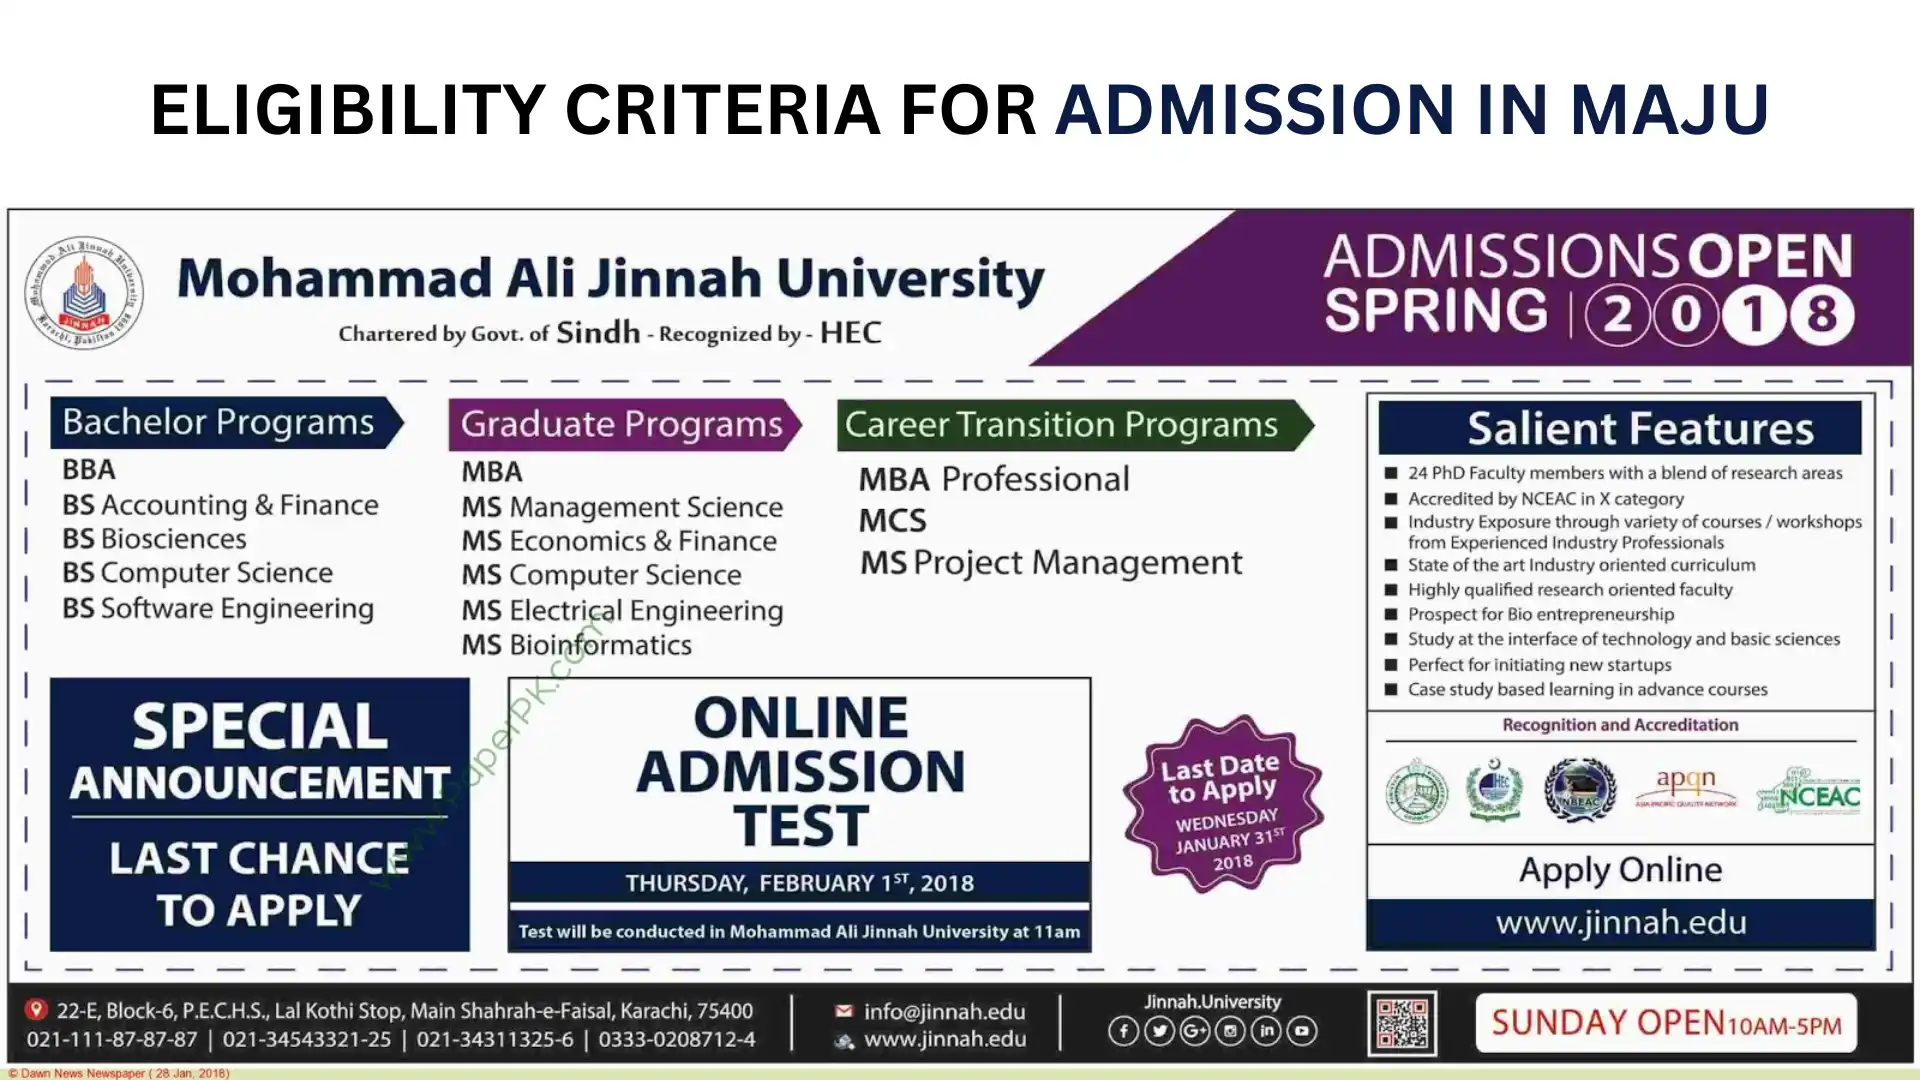 Eligibility Criteria for admission in MAJU